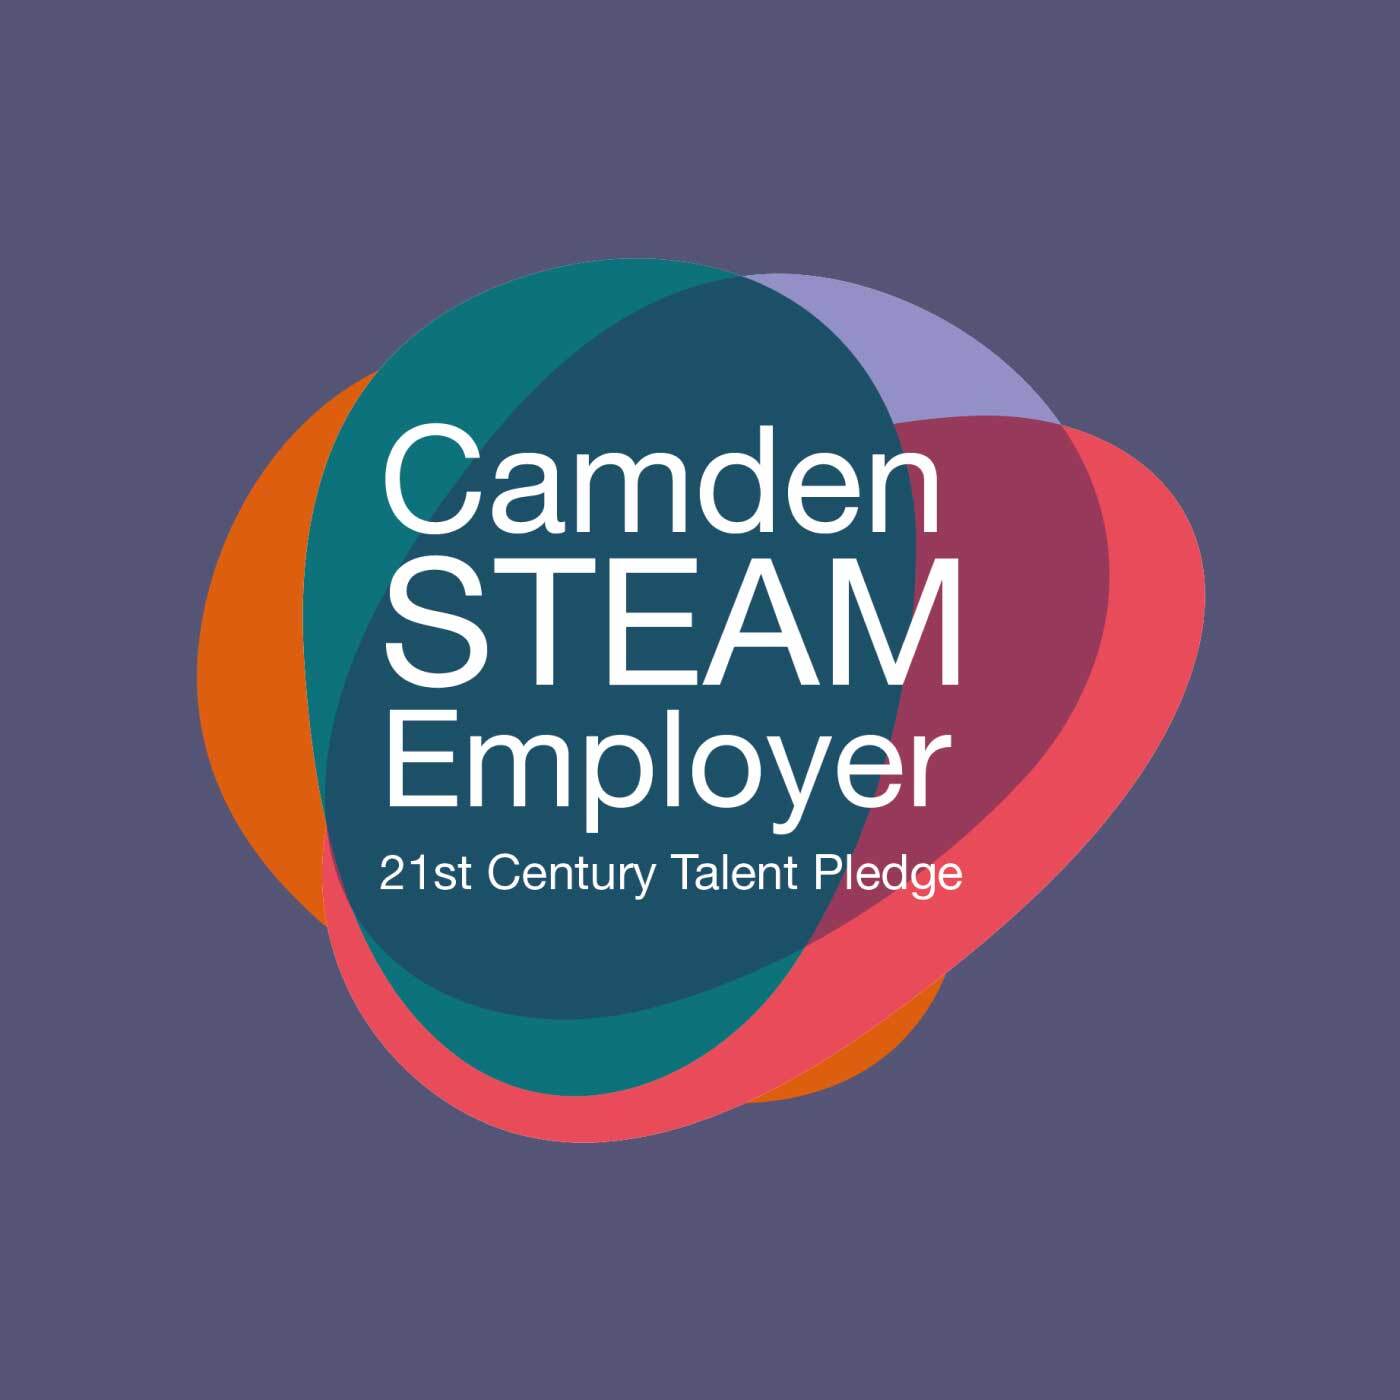 Camden STEAM Employer - 21st Century Talent Pledge